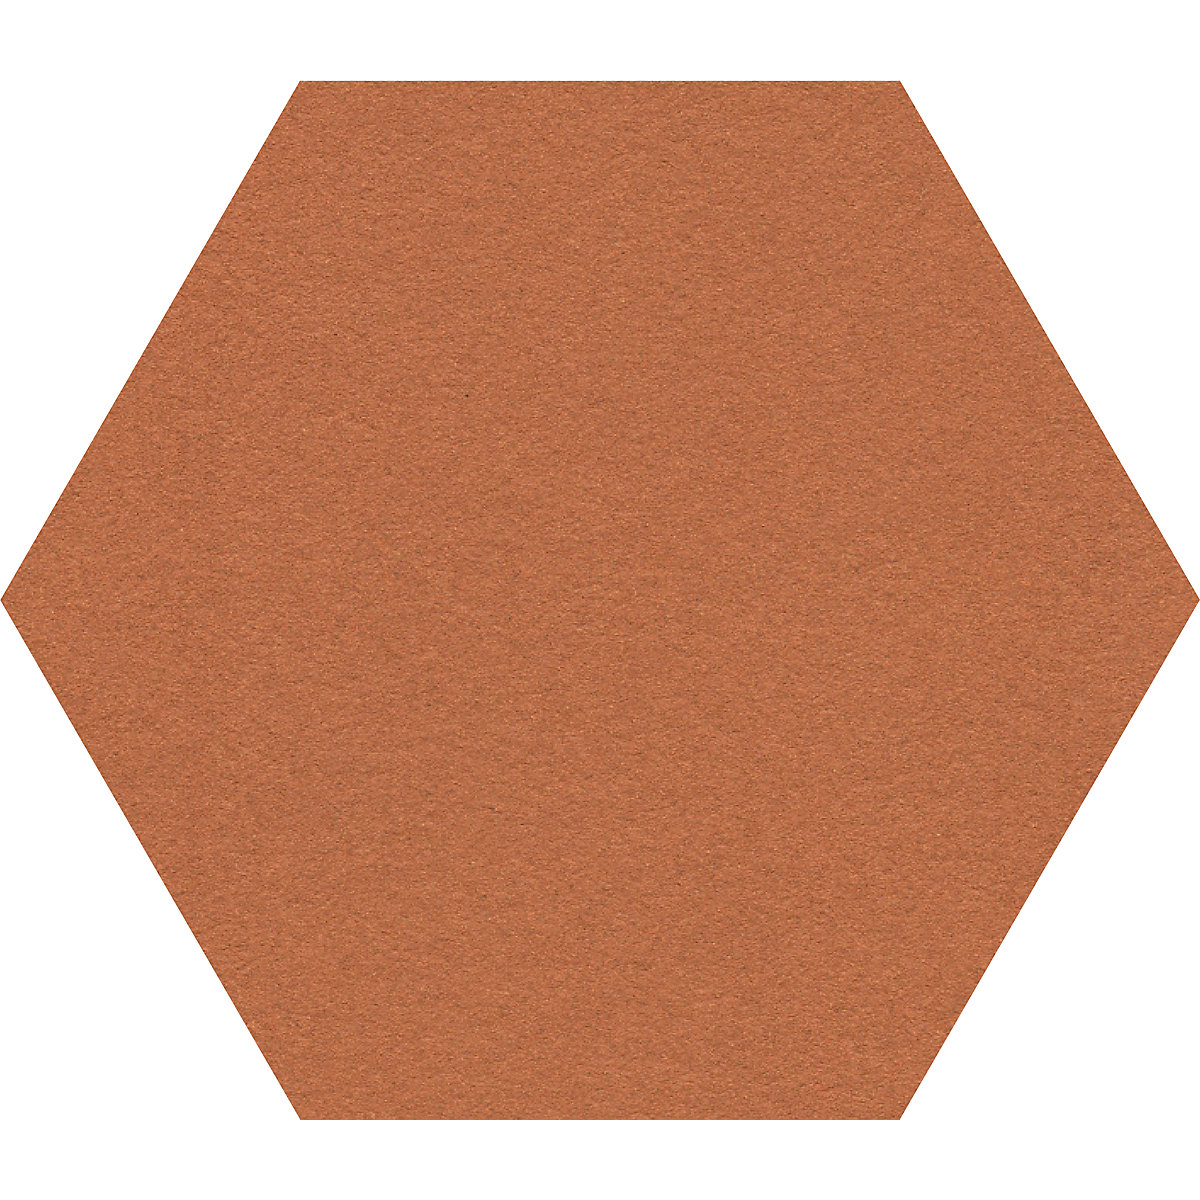 Tableau à épingles design hexagonal – Chameleon